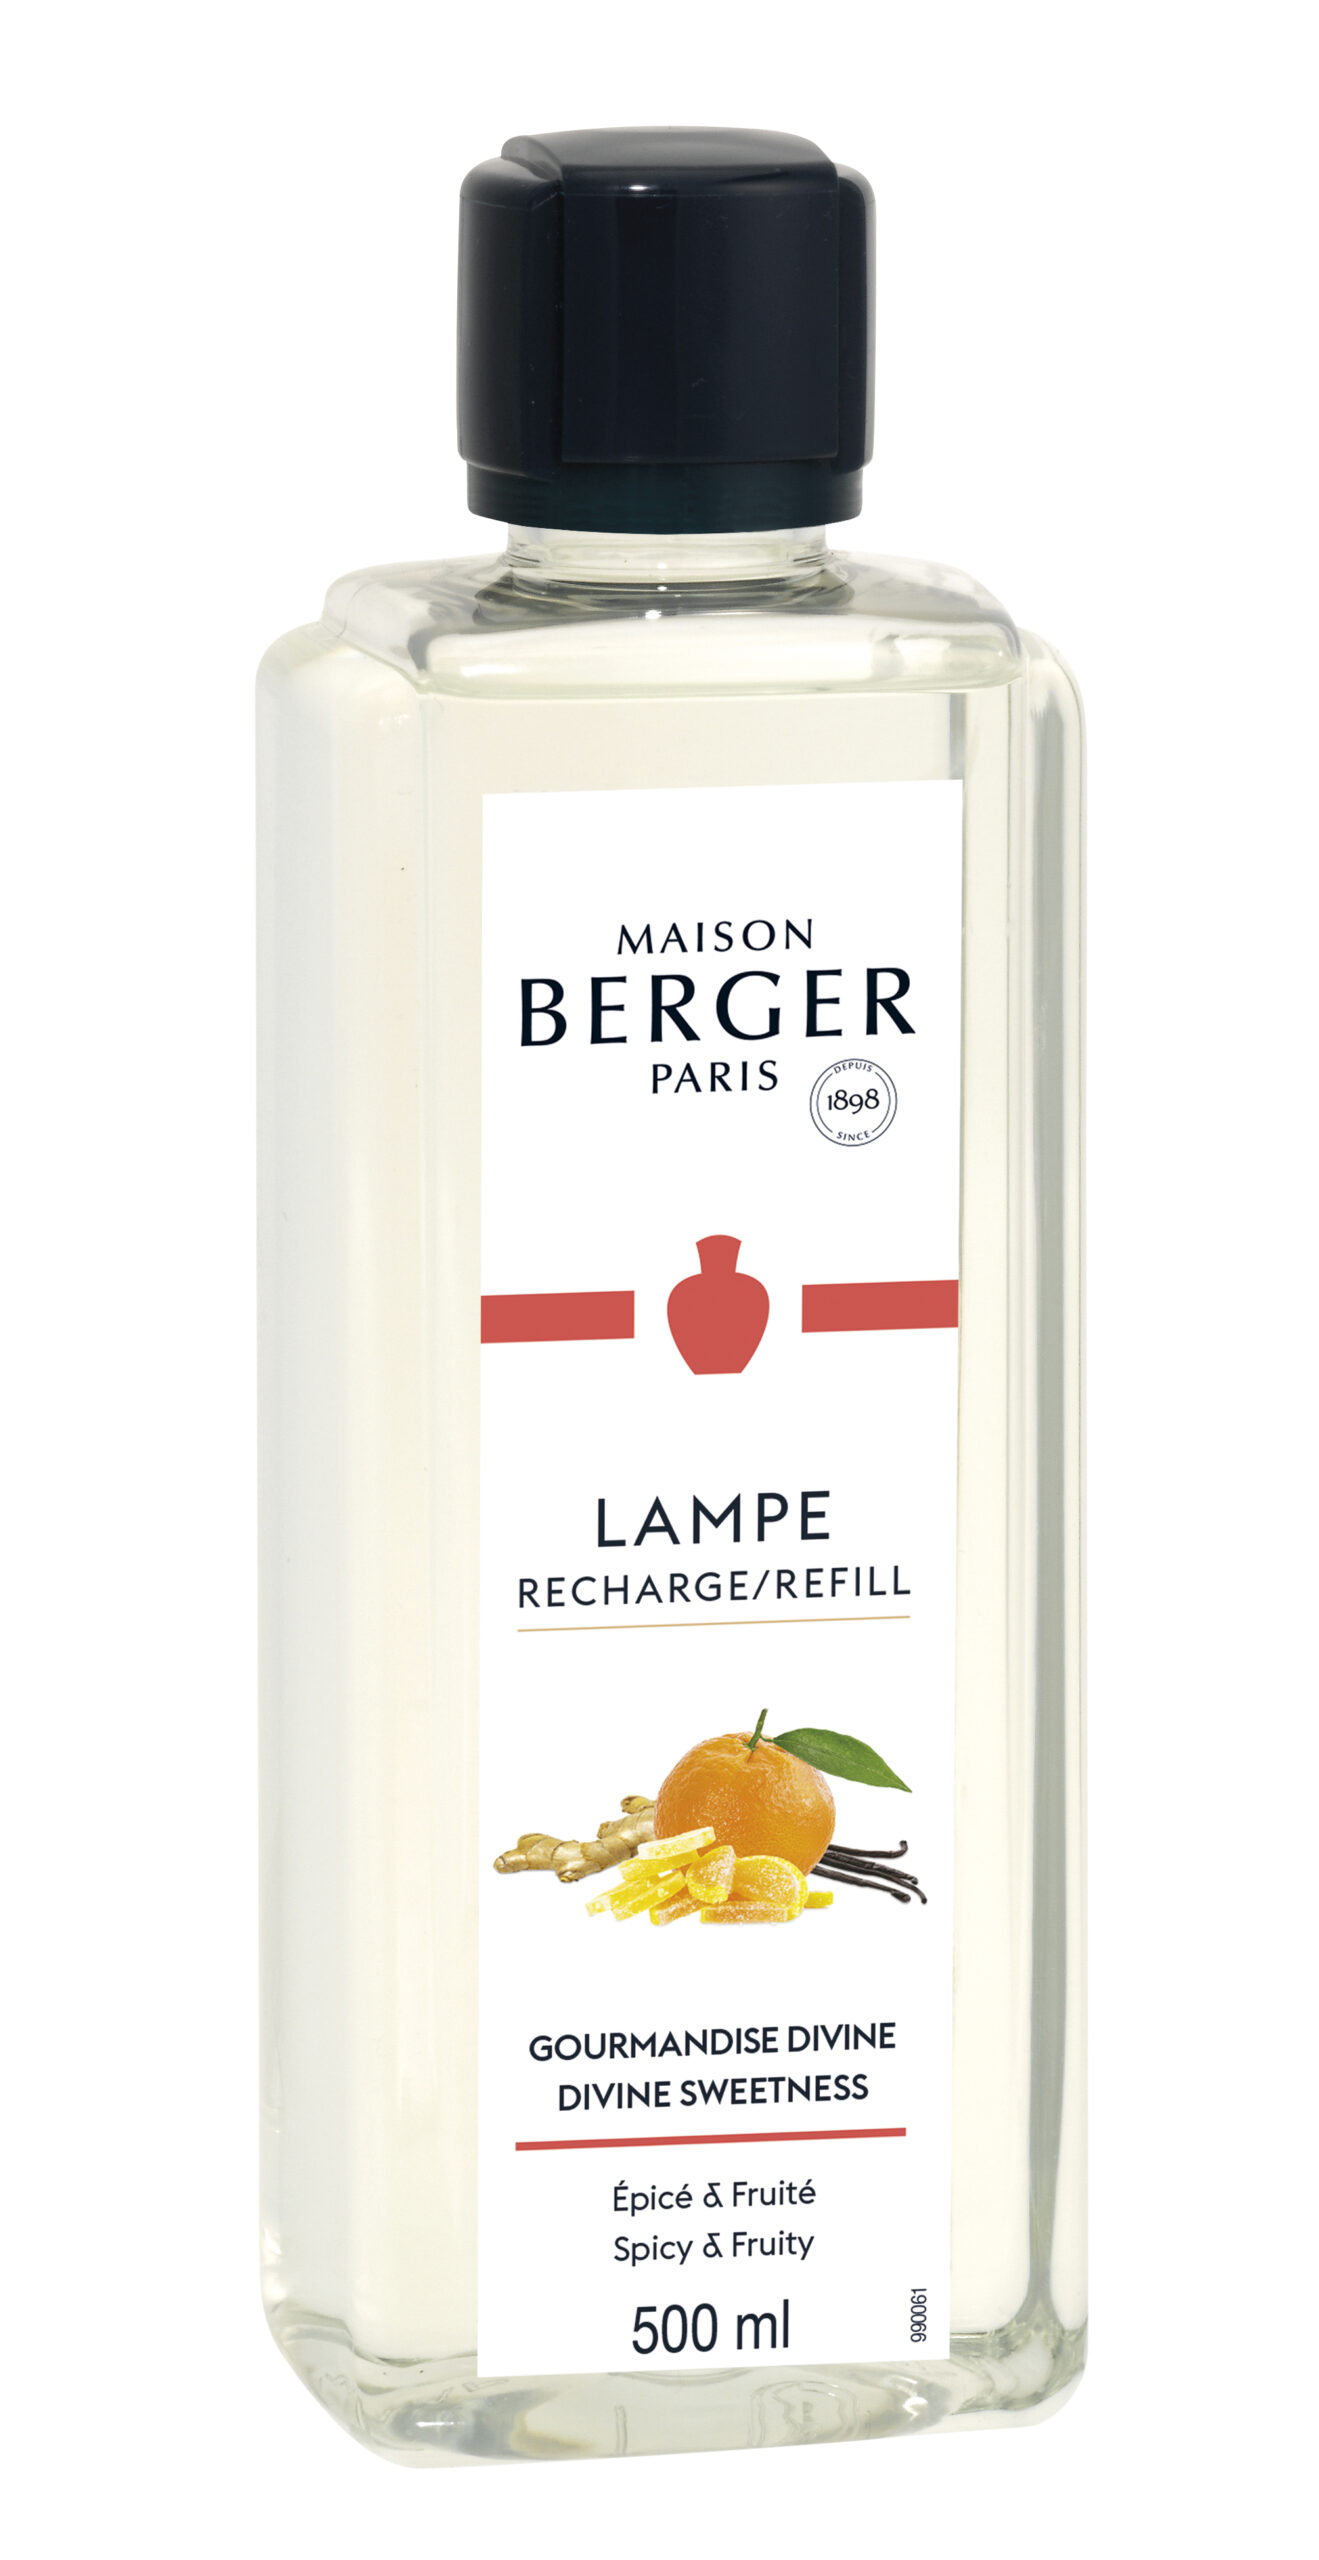 Maison Berger Paris - parfum Divine Sweetness - 500ml